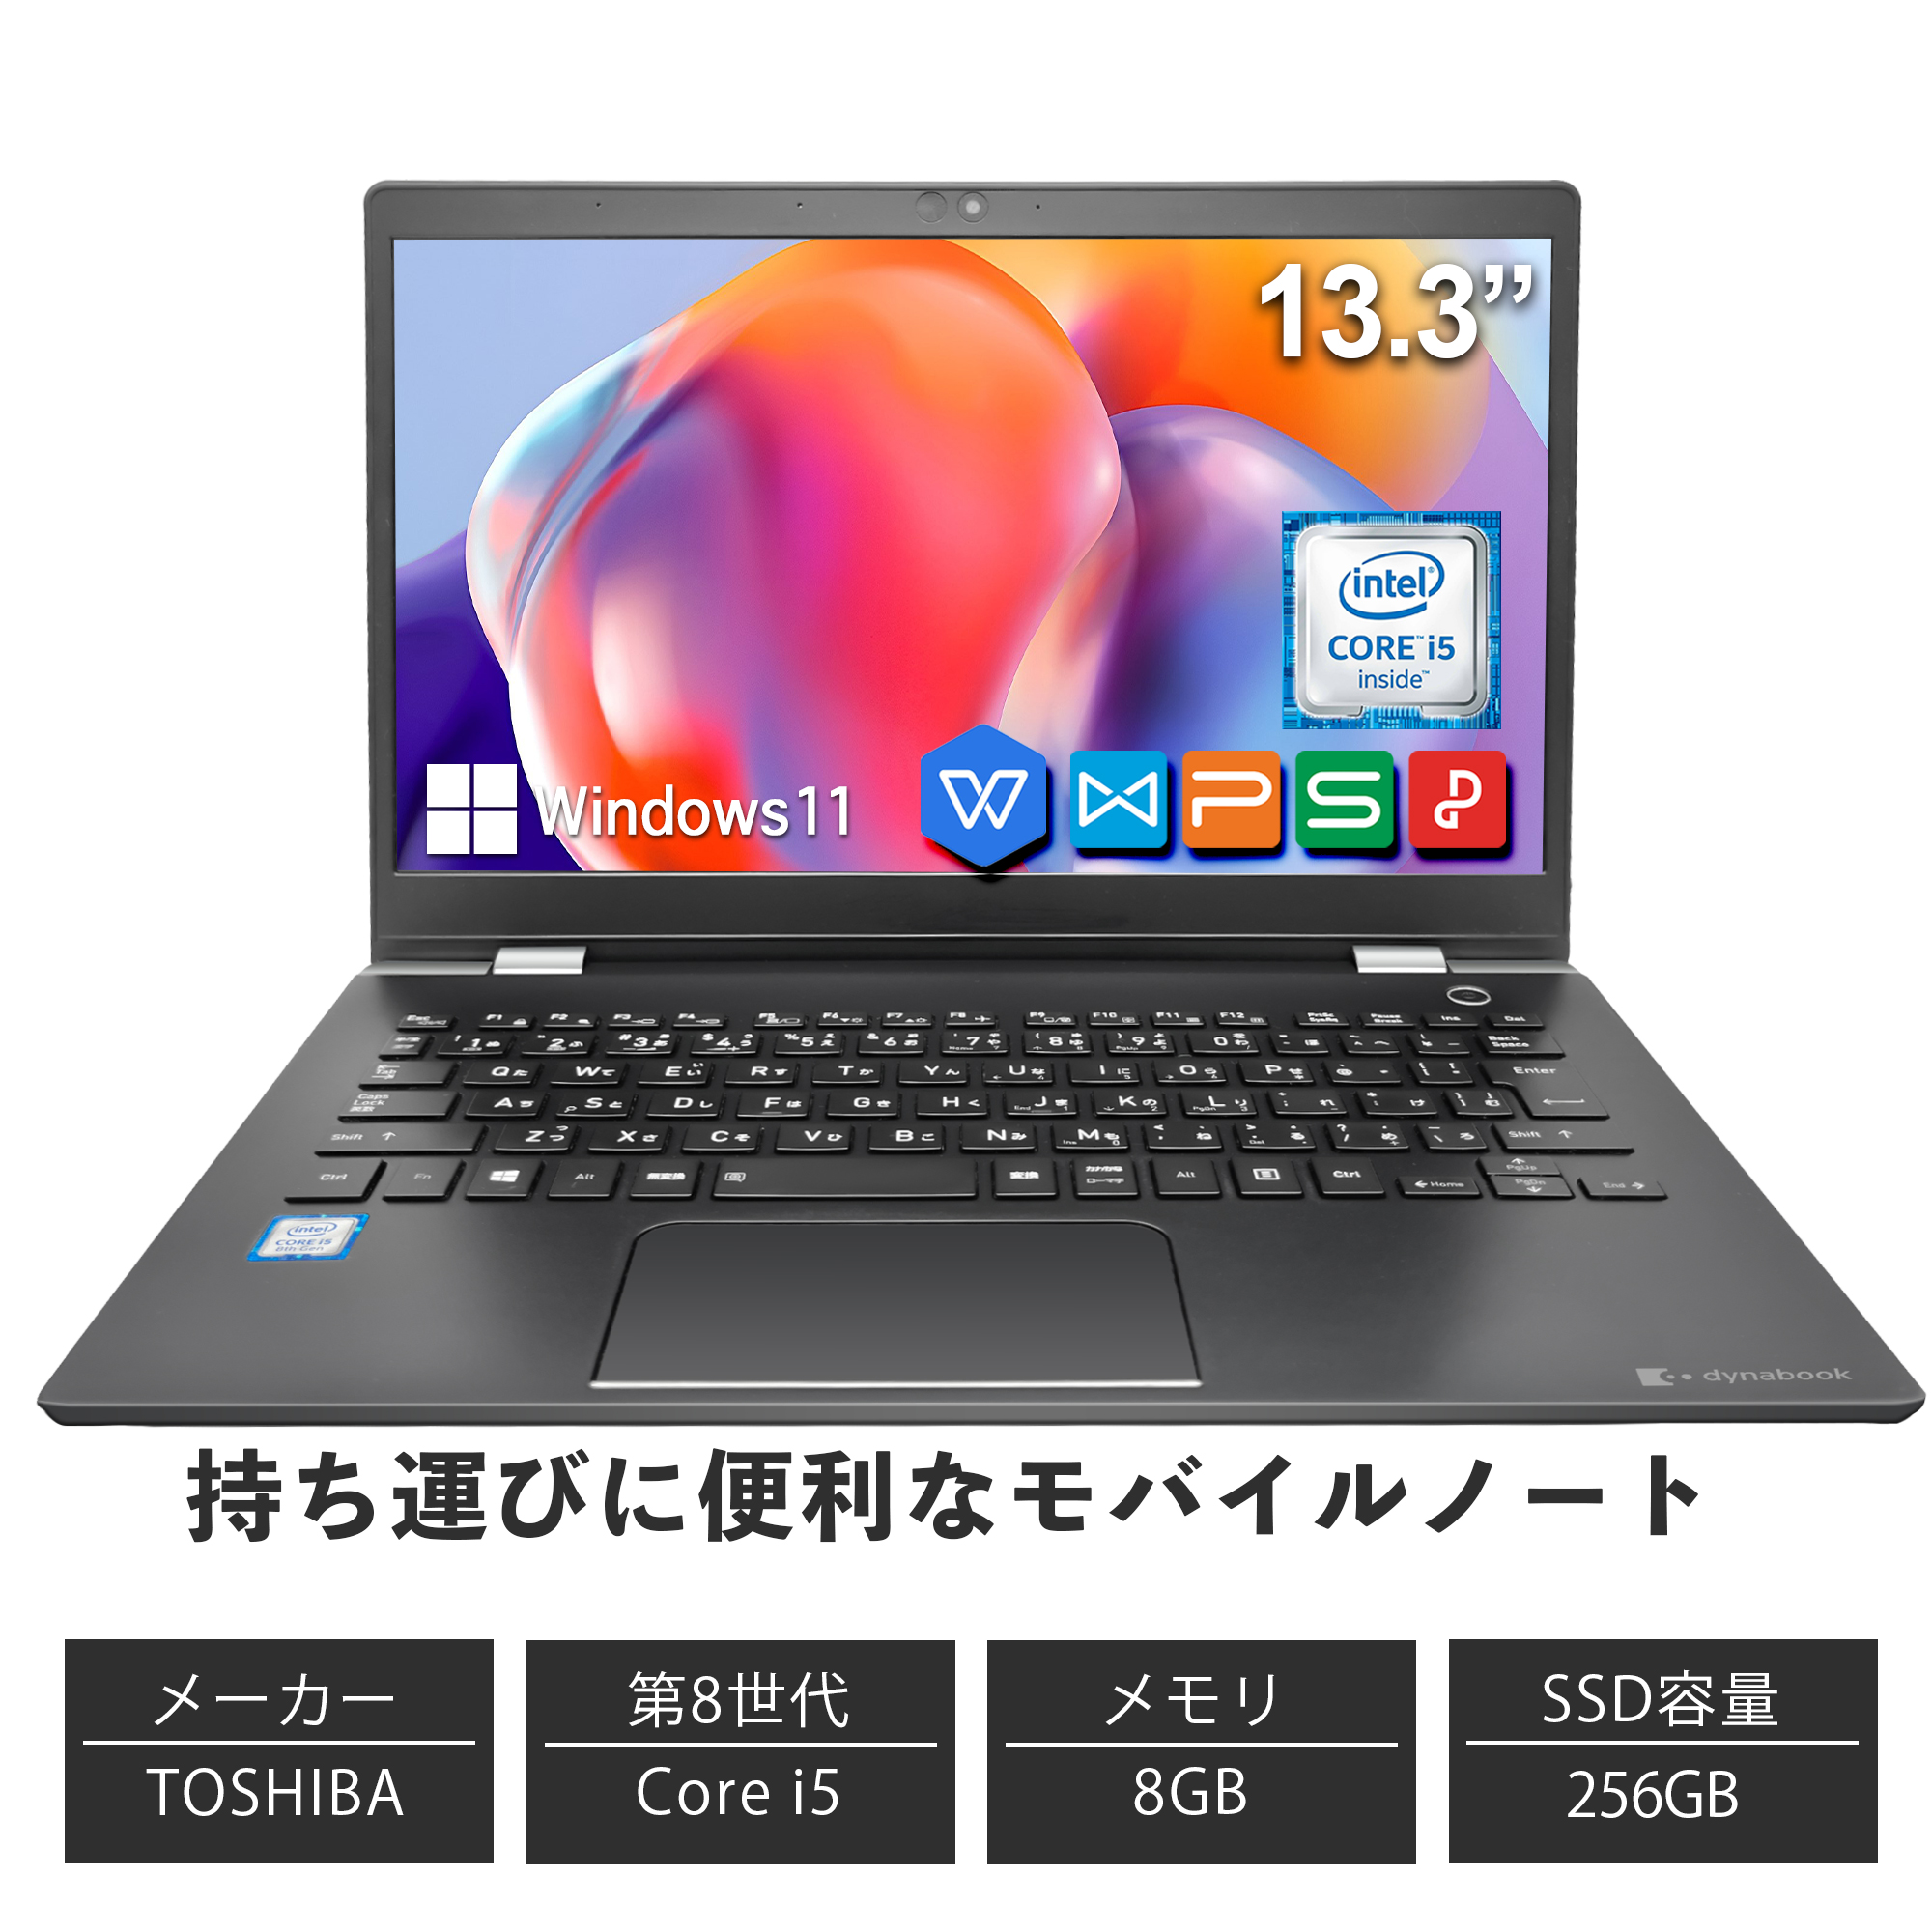 中古パソコン ノートパソコン offic付き Toshiba ノートパソコン コスパ抜群 WPS windows11 メモリ8GB SSD256GB 第8世代 Core i5  13.3インチ 東芝 dynabook G83